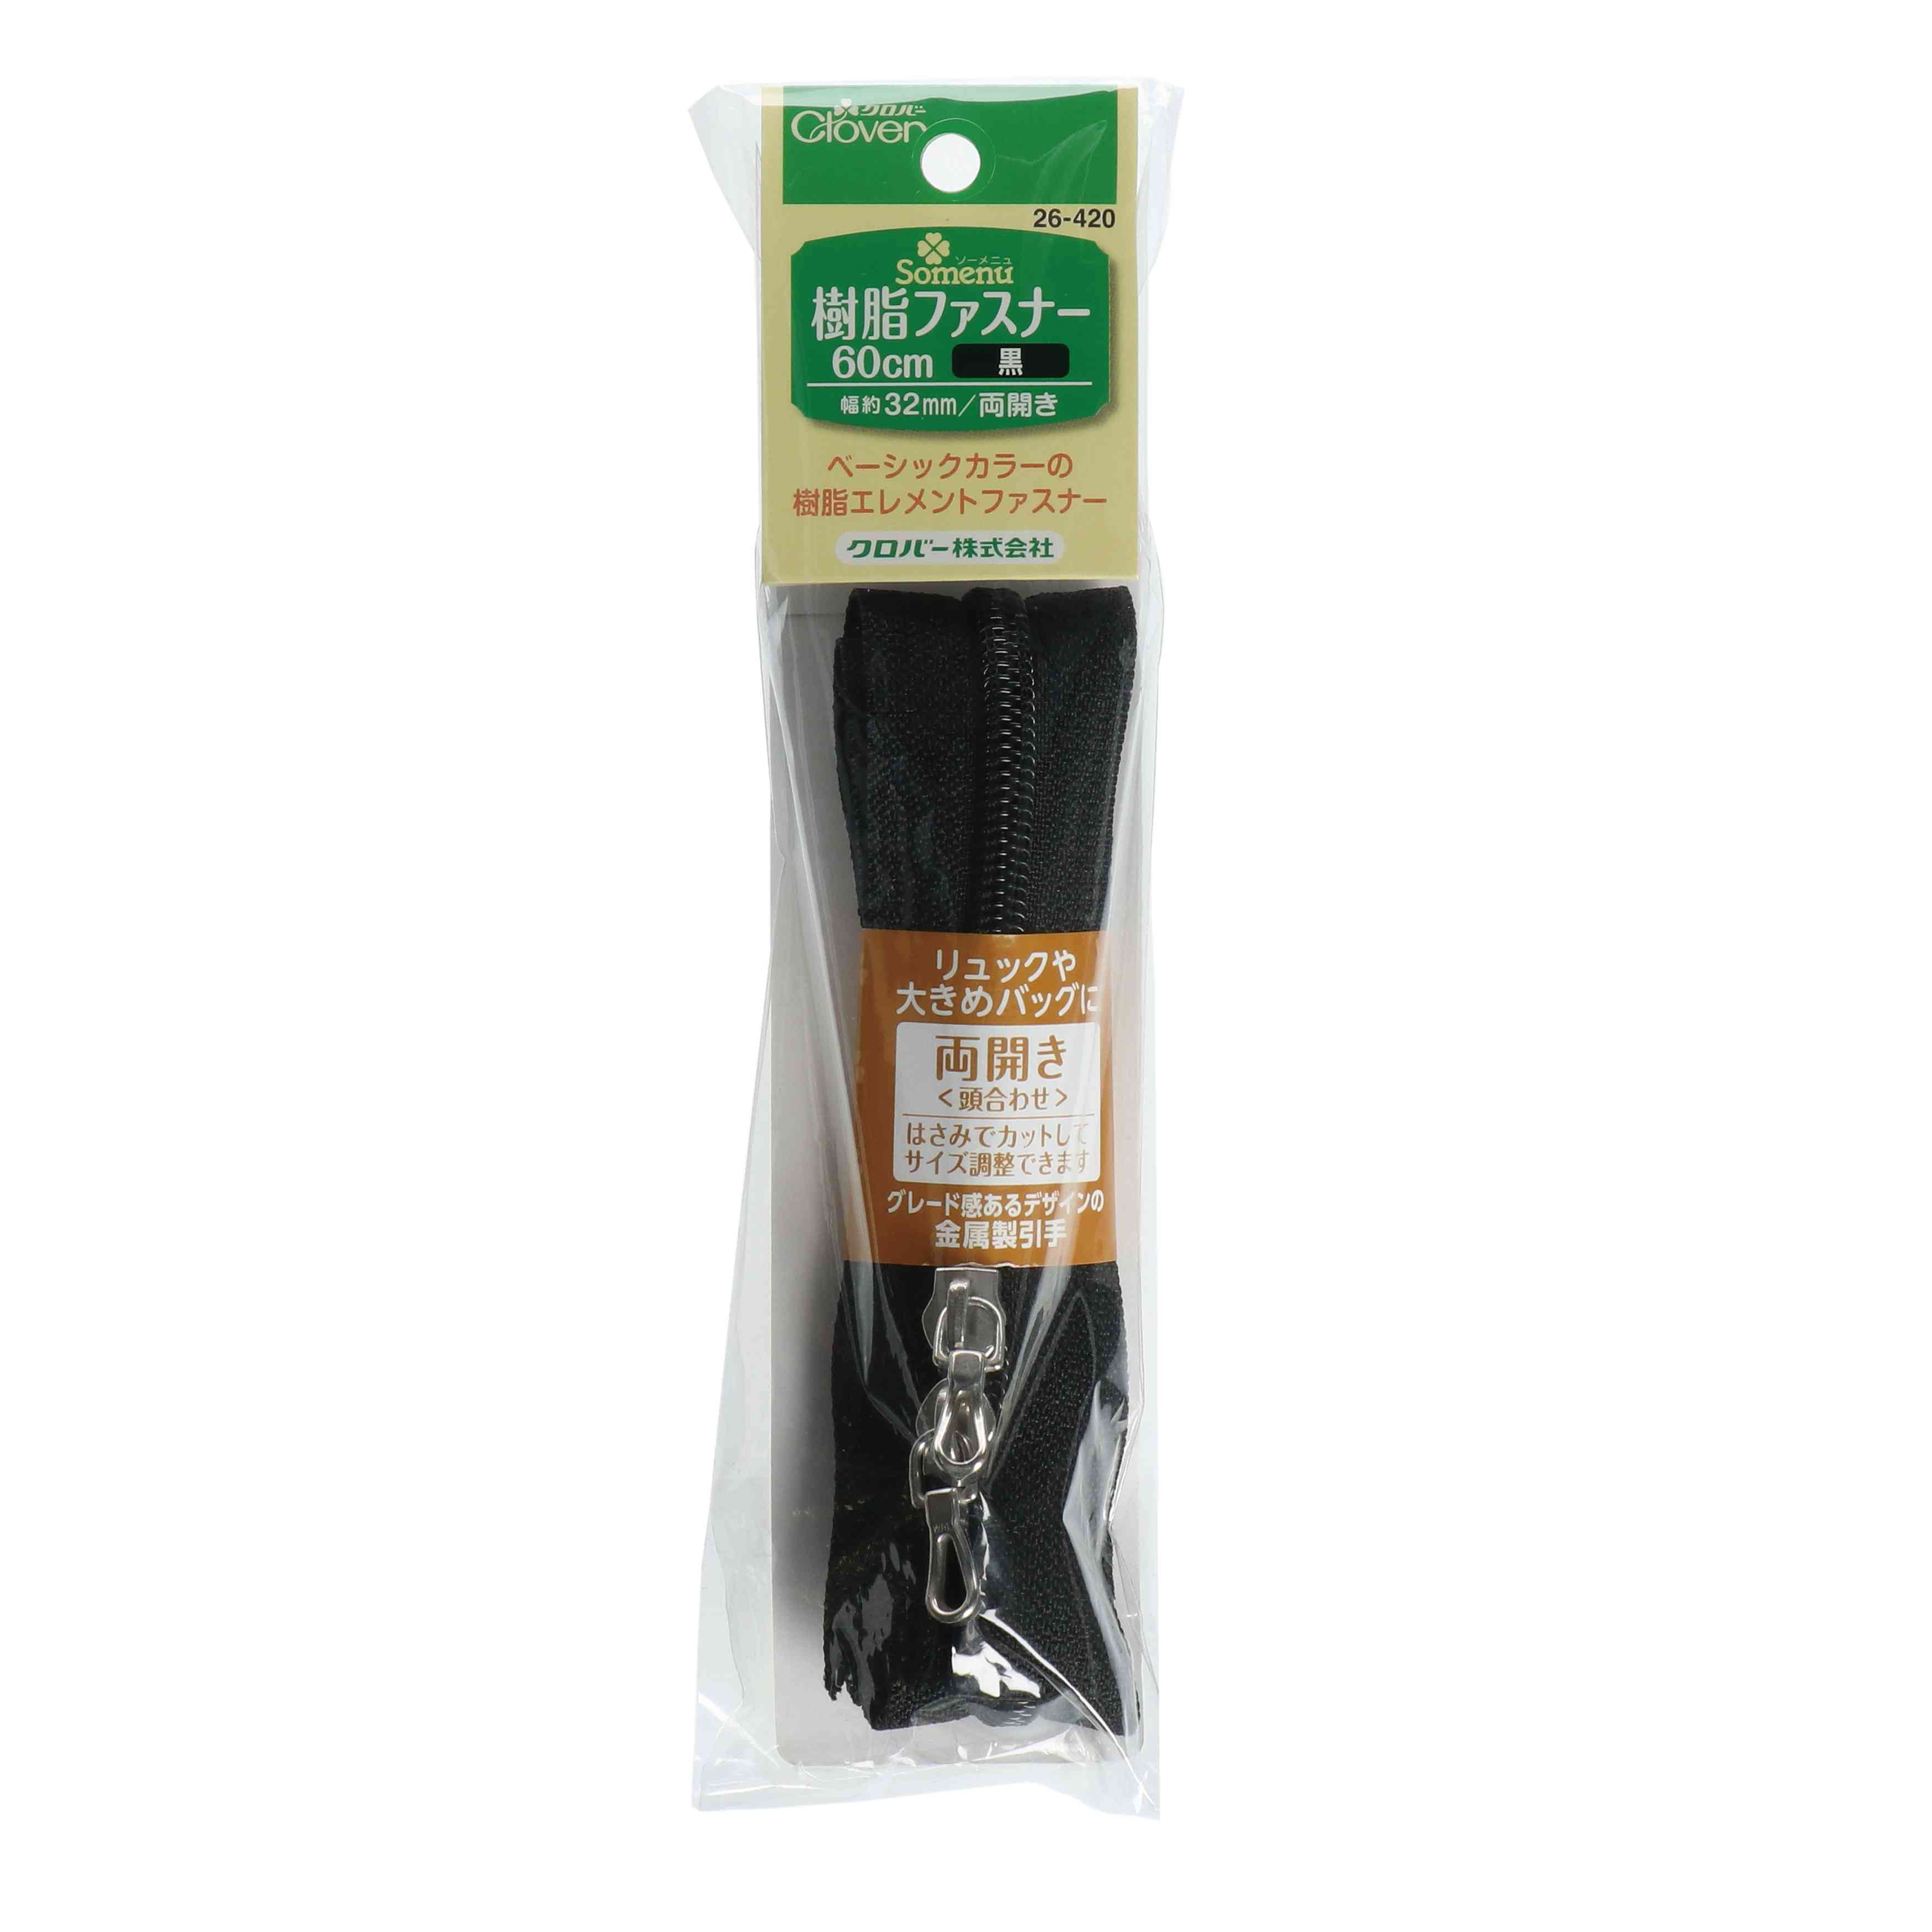 26420 Resin Zipper 60cm Double Black[Handicraft Supplies] Clover